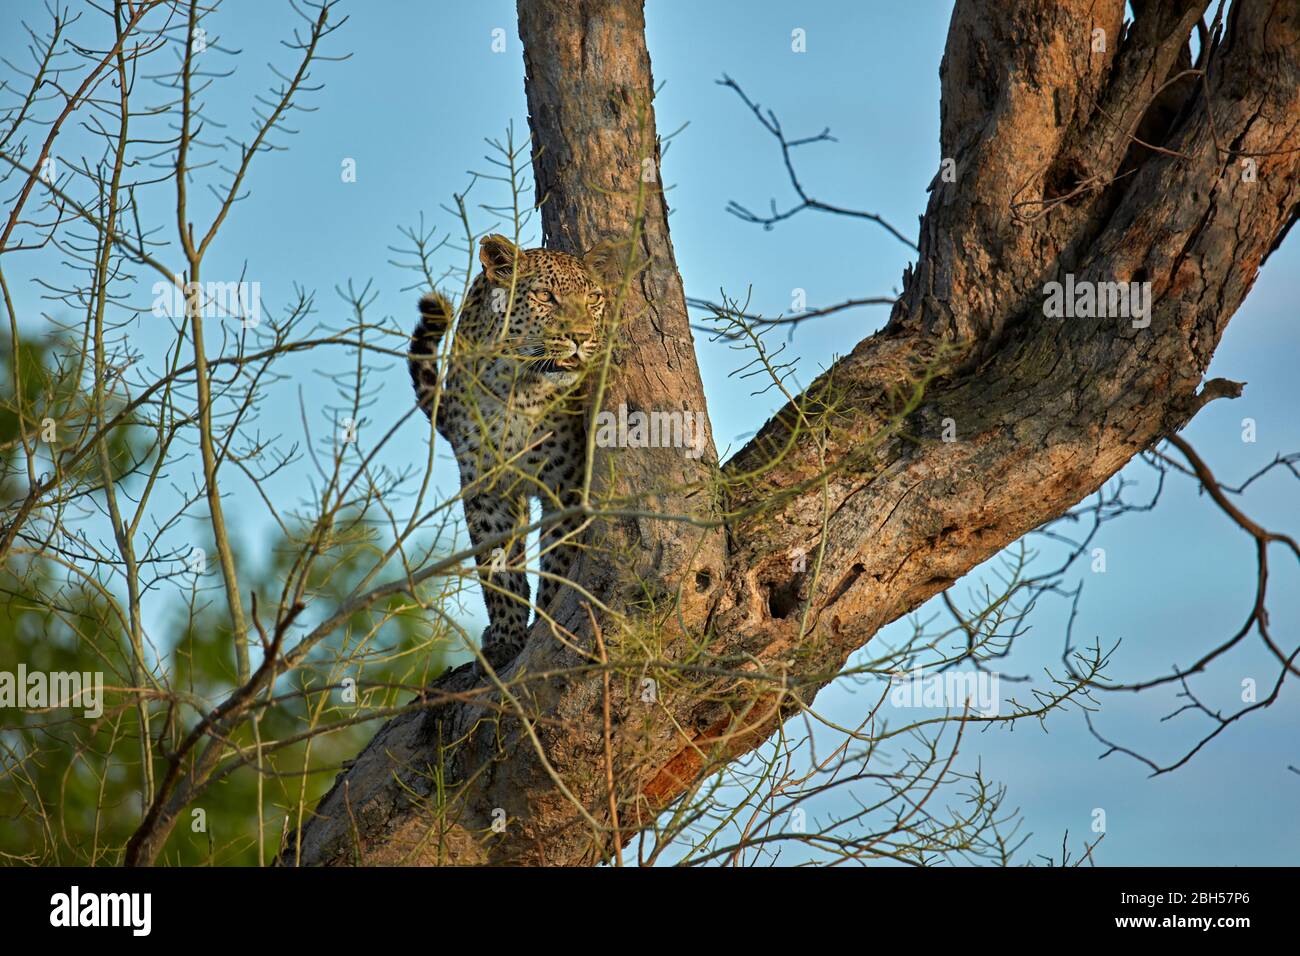 Leopardo, riserva di gioco di Moremi, Botswana, Africa Foto Stock